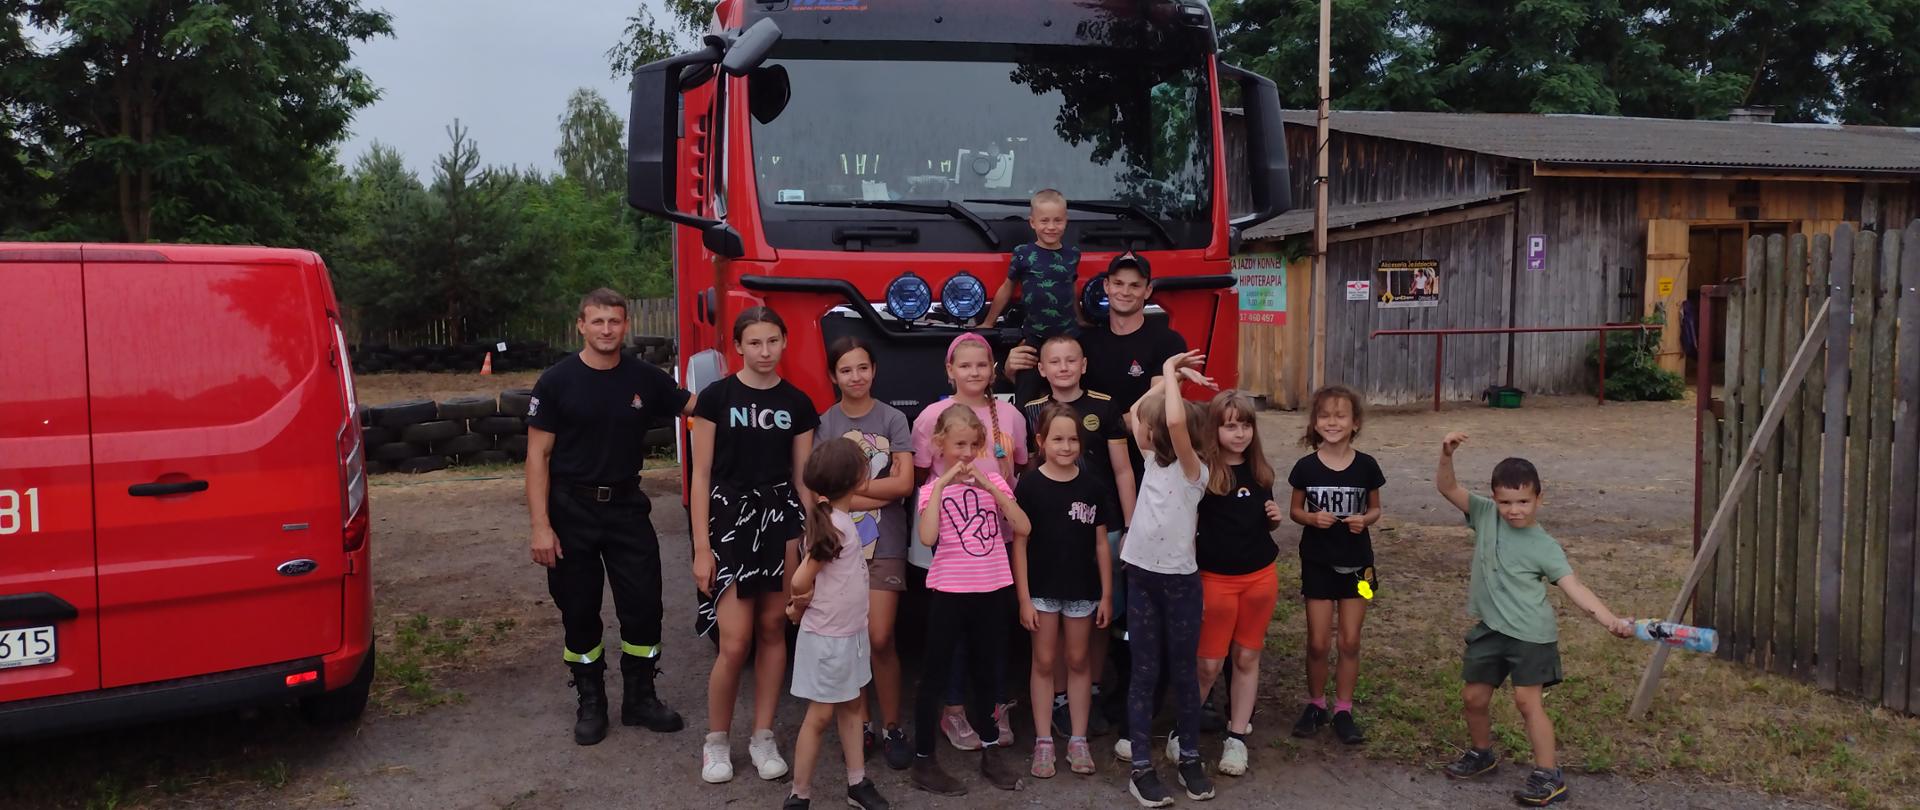 Zdjęcie grupowe dzieci wraz ze strażakami na tle samochodu gaśniczego i budynków stadniny.